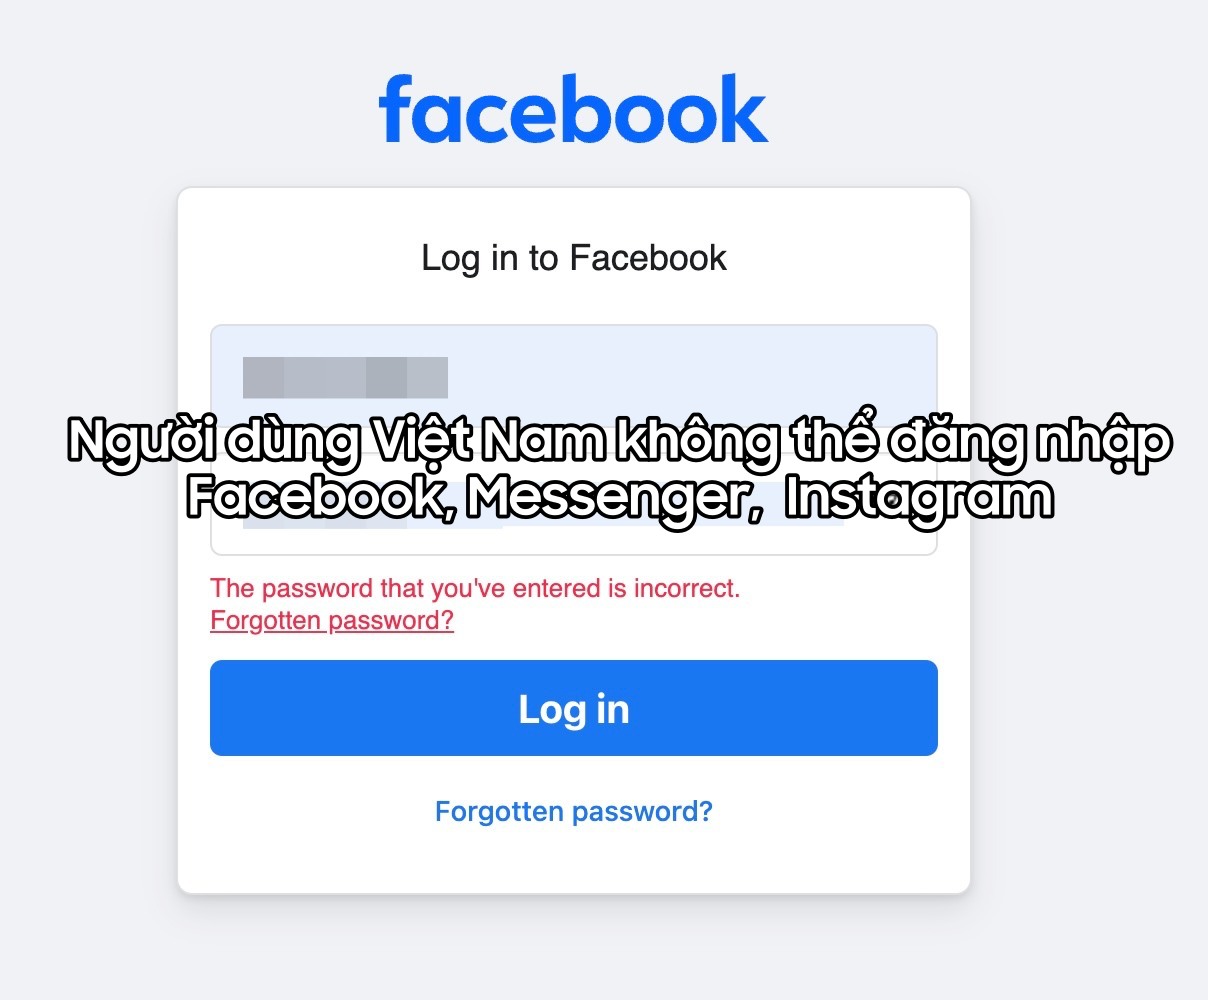 Hệ thống Facebook, Messenger, Instagram bị sập hàng loạt, người dùng Việt Nam hoang mang!